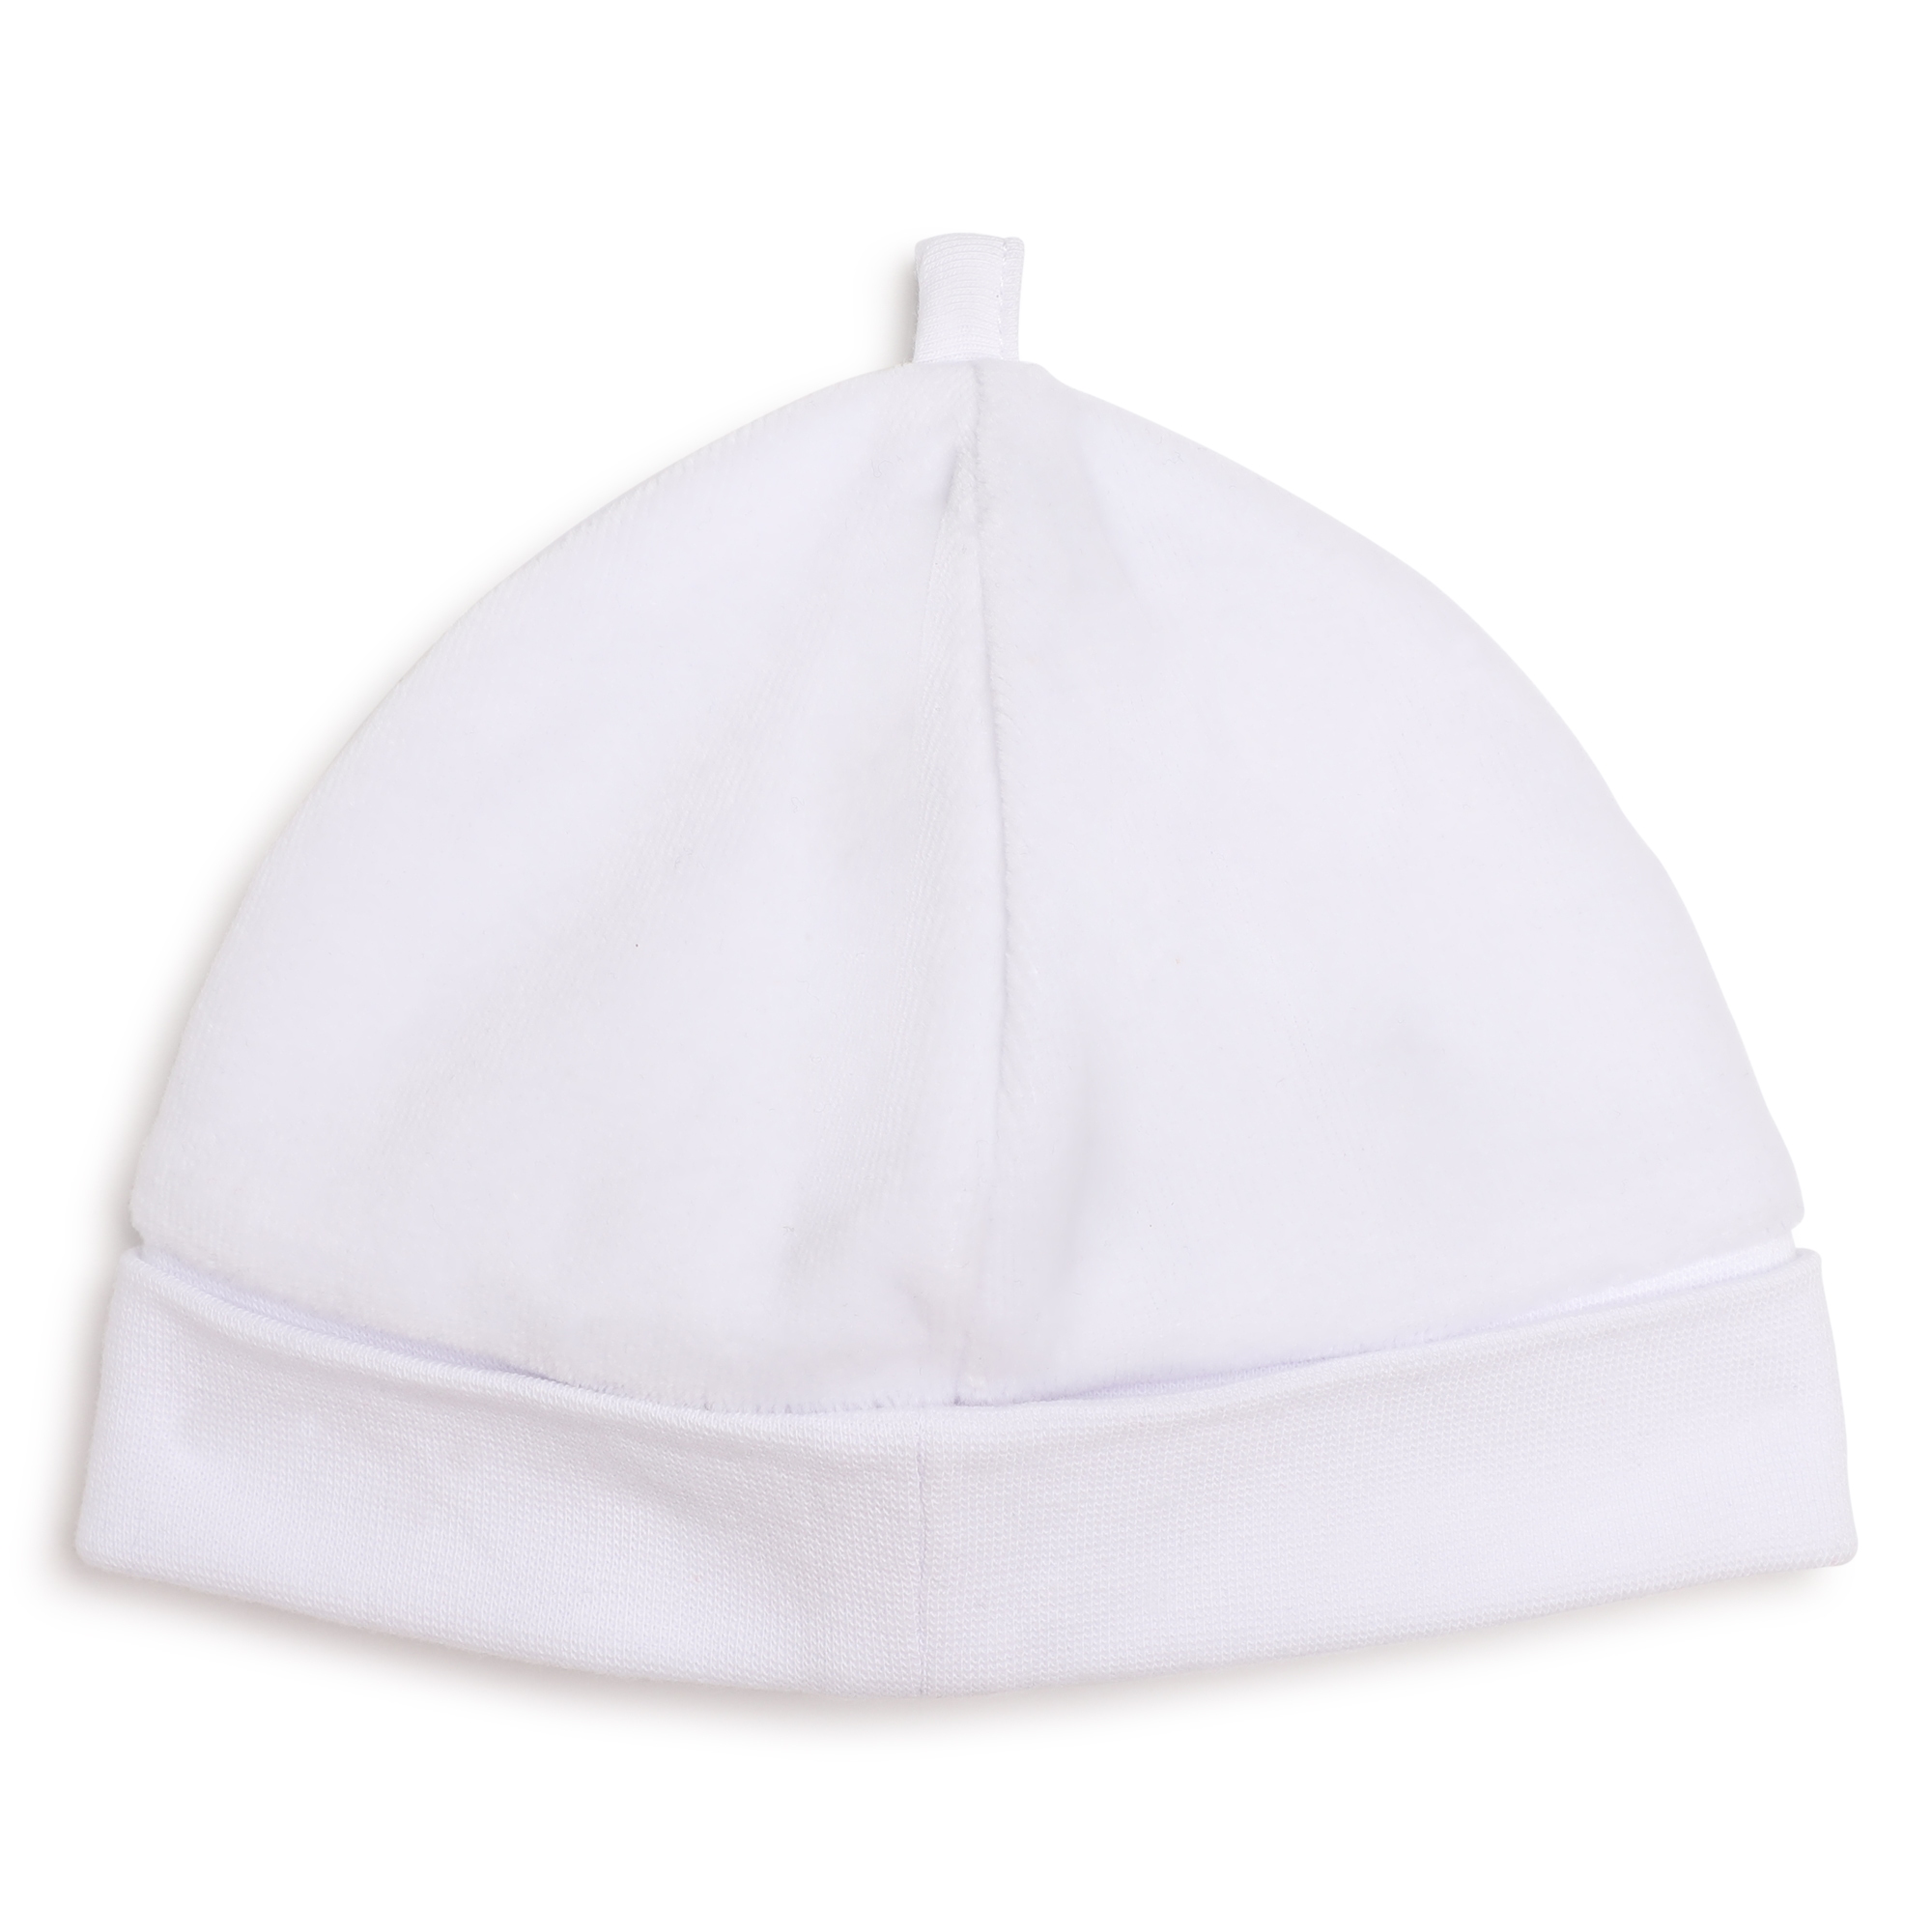 Velvet newborn hat BOSS for UNISEX